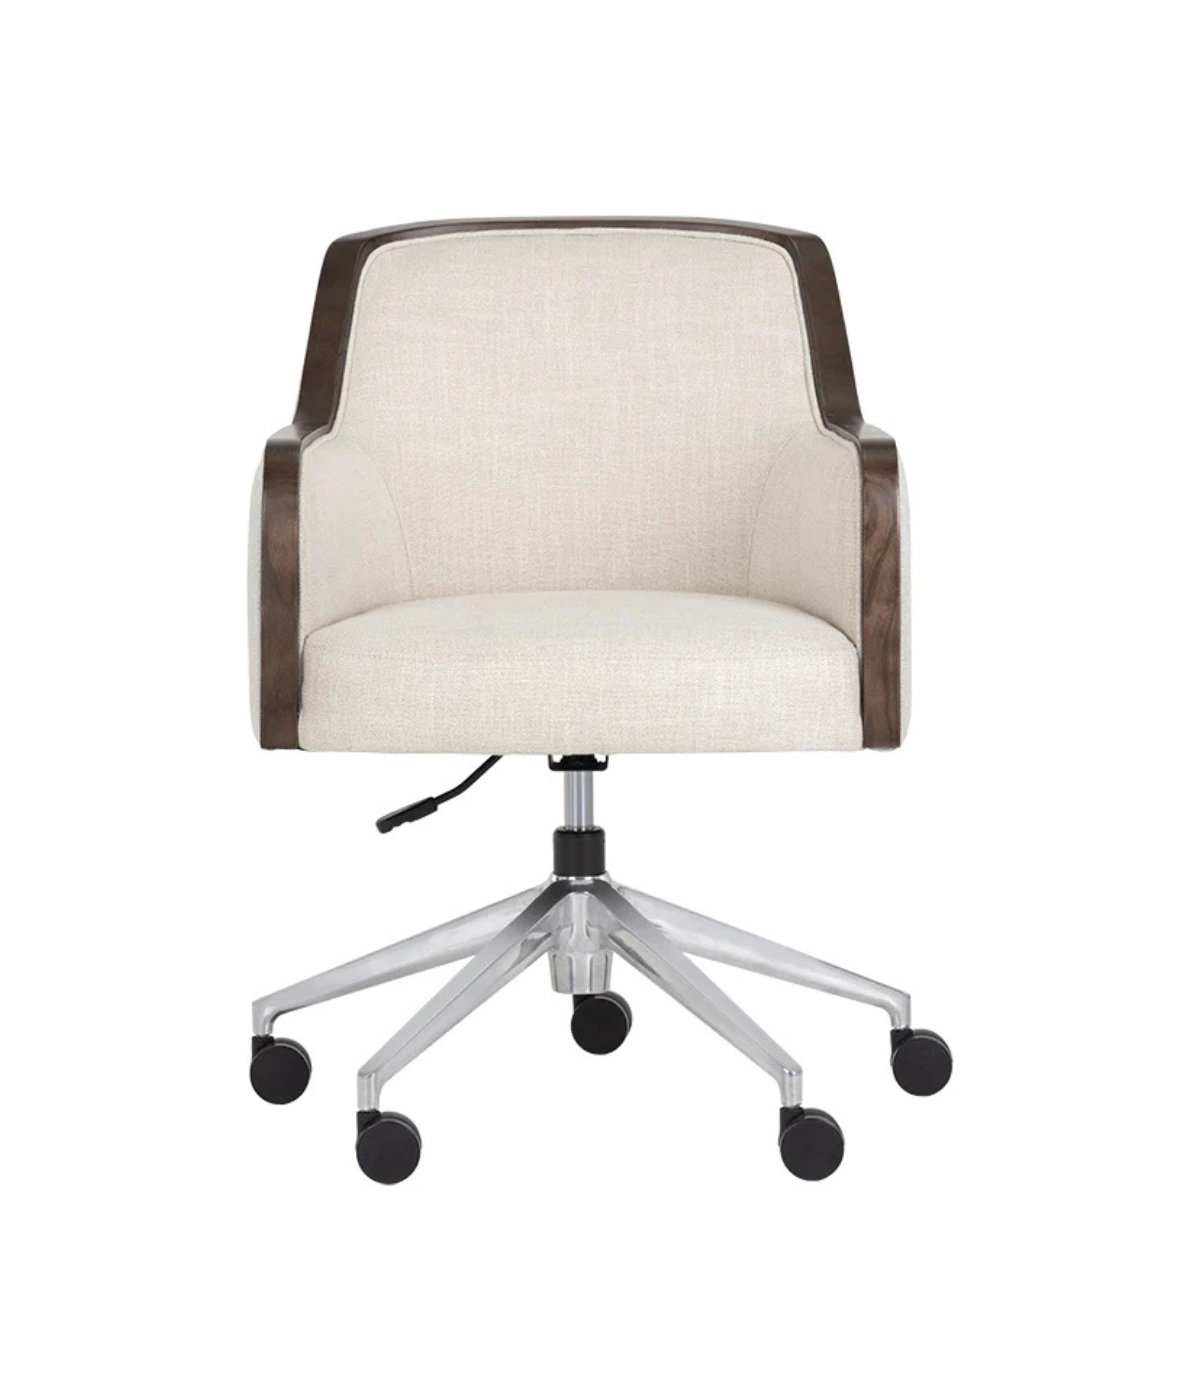 Foley Office Chair